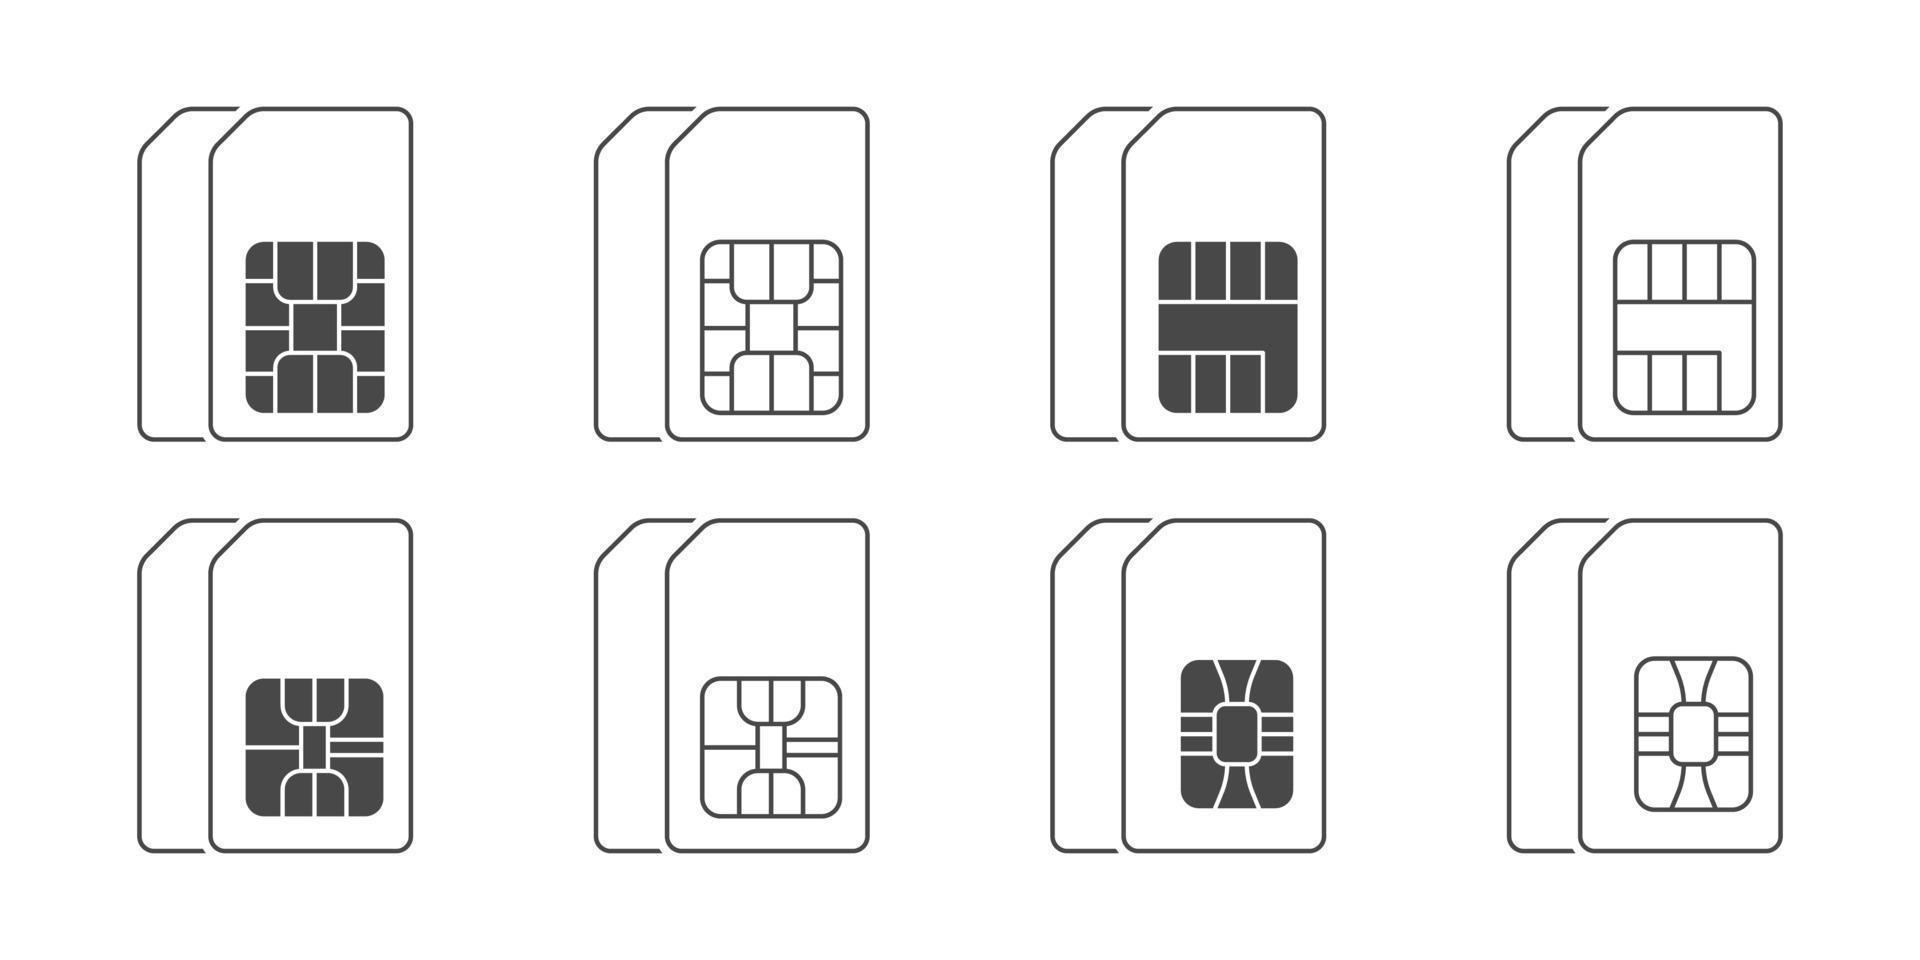 Tarjeta sim - Iconos gratis de tecnología